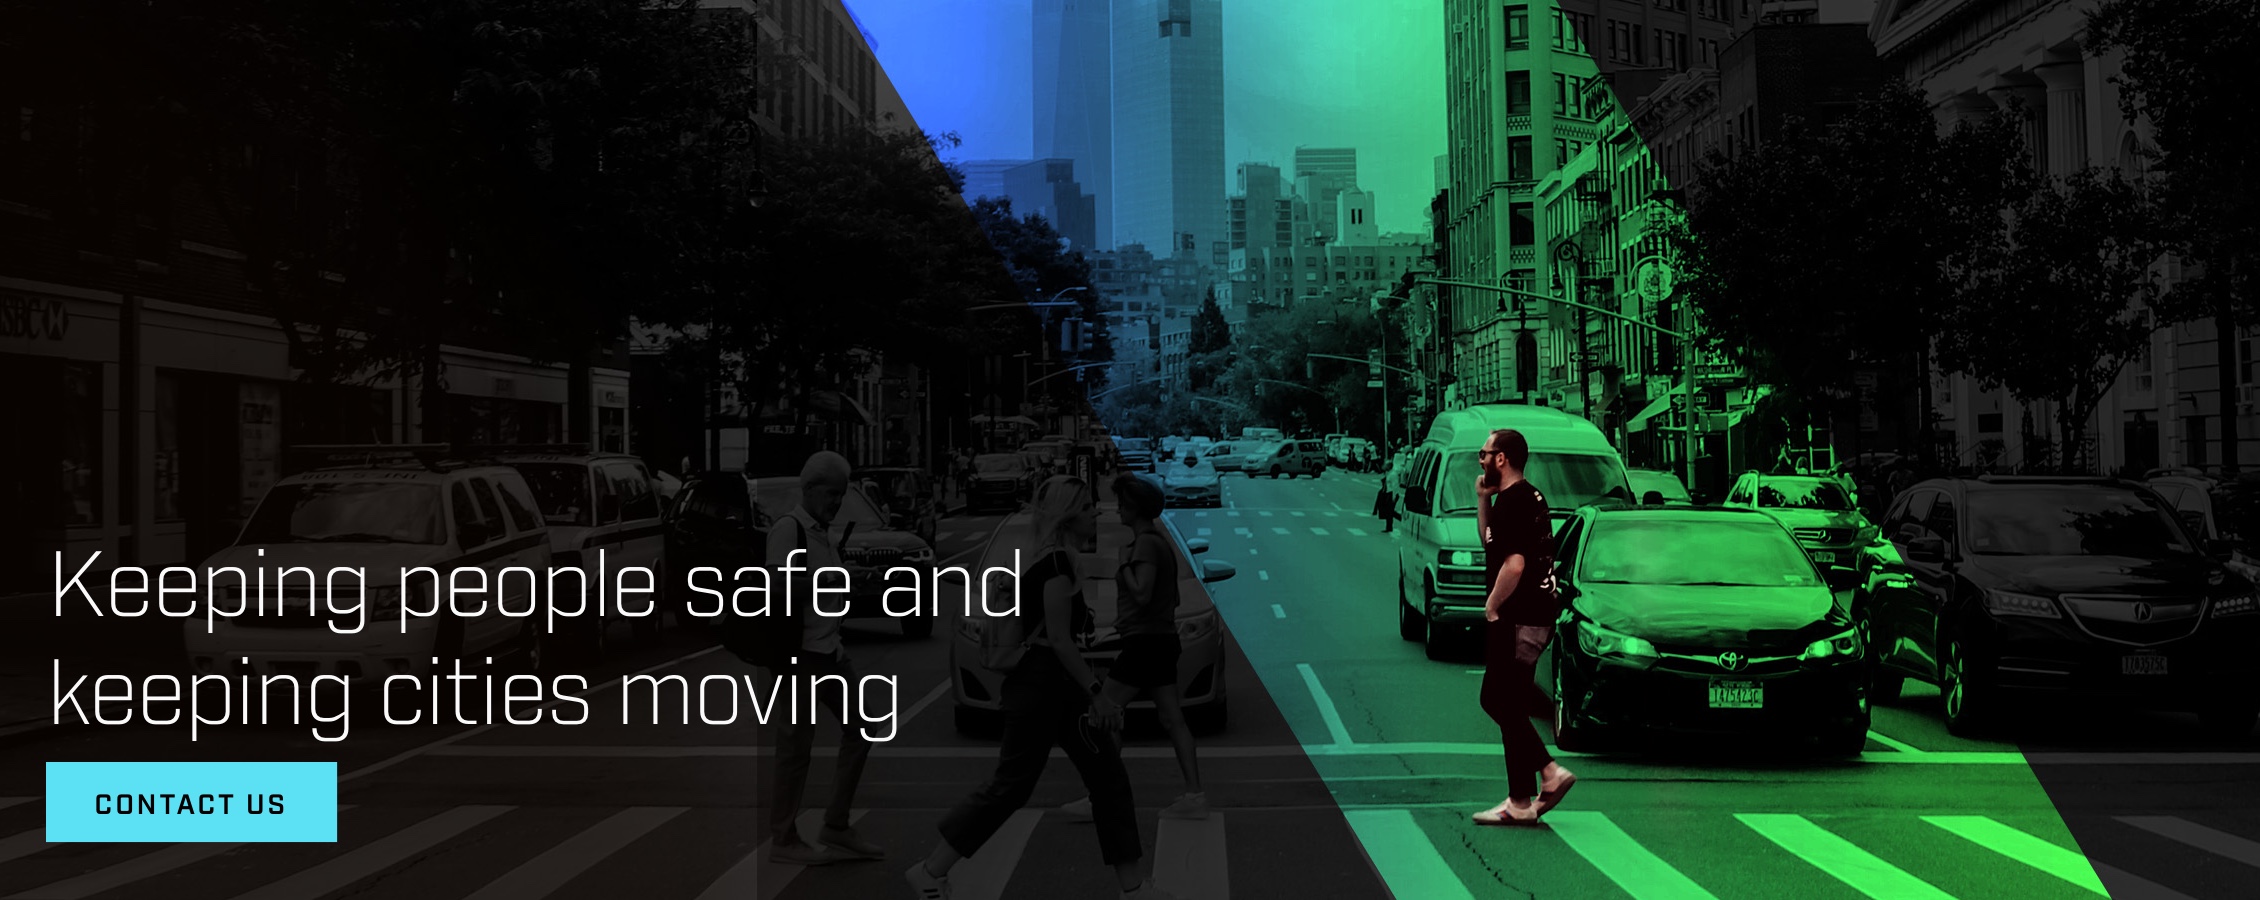 Mantendo as pessoas seguras e as cidades em movimento. Saiba mais